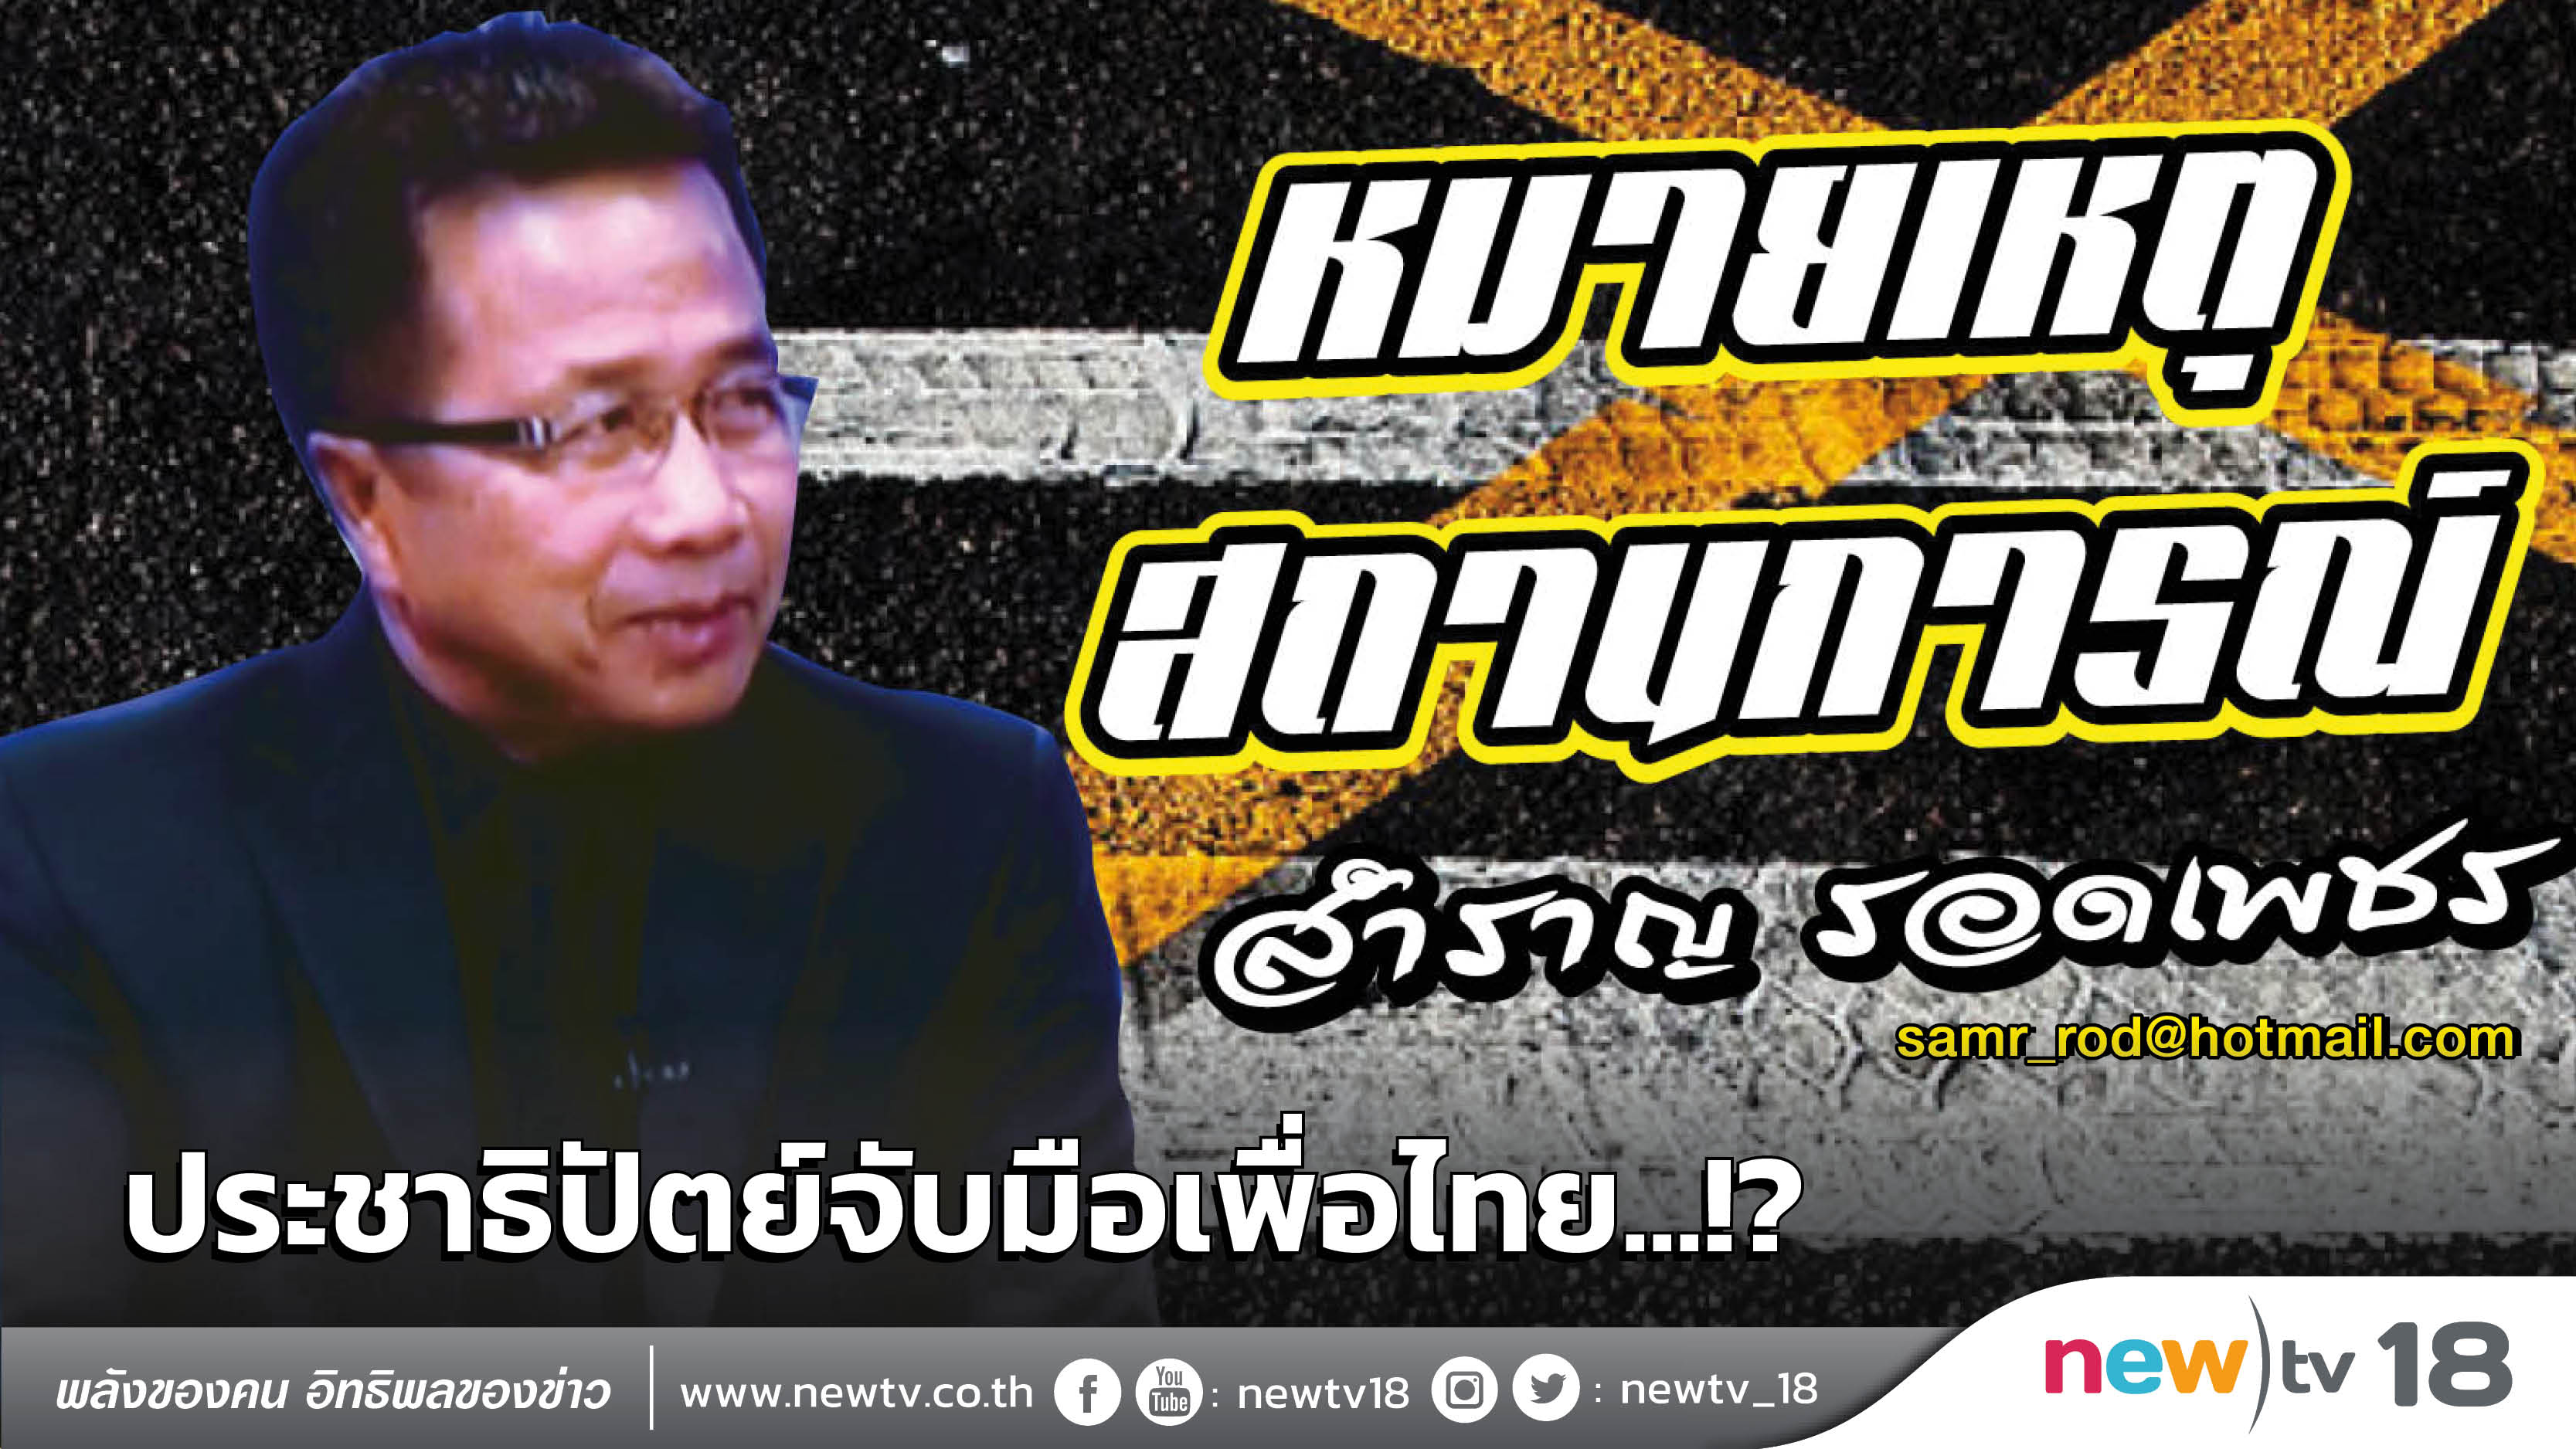 หมายเหตุสถานการณ์: ประชาธิปัตย์จับมือเพื่อไทย...!?